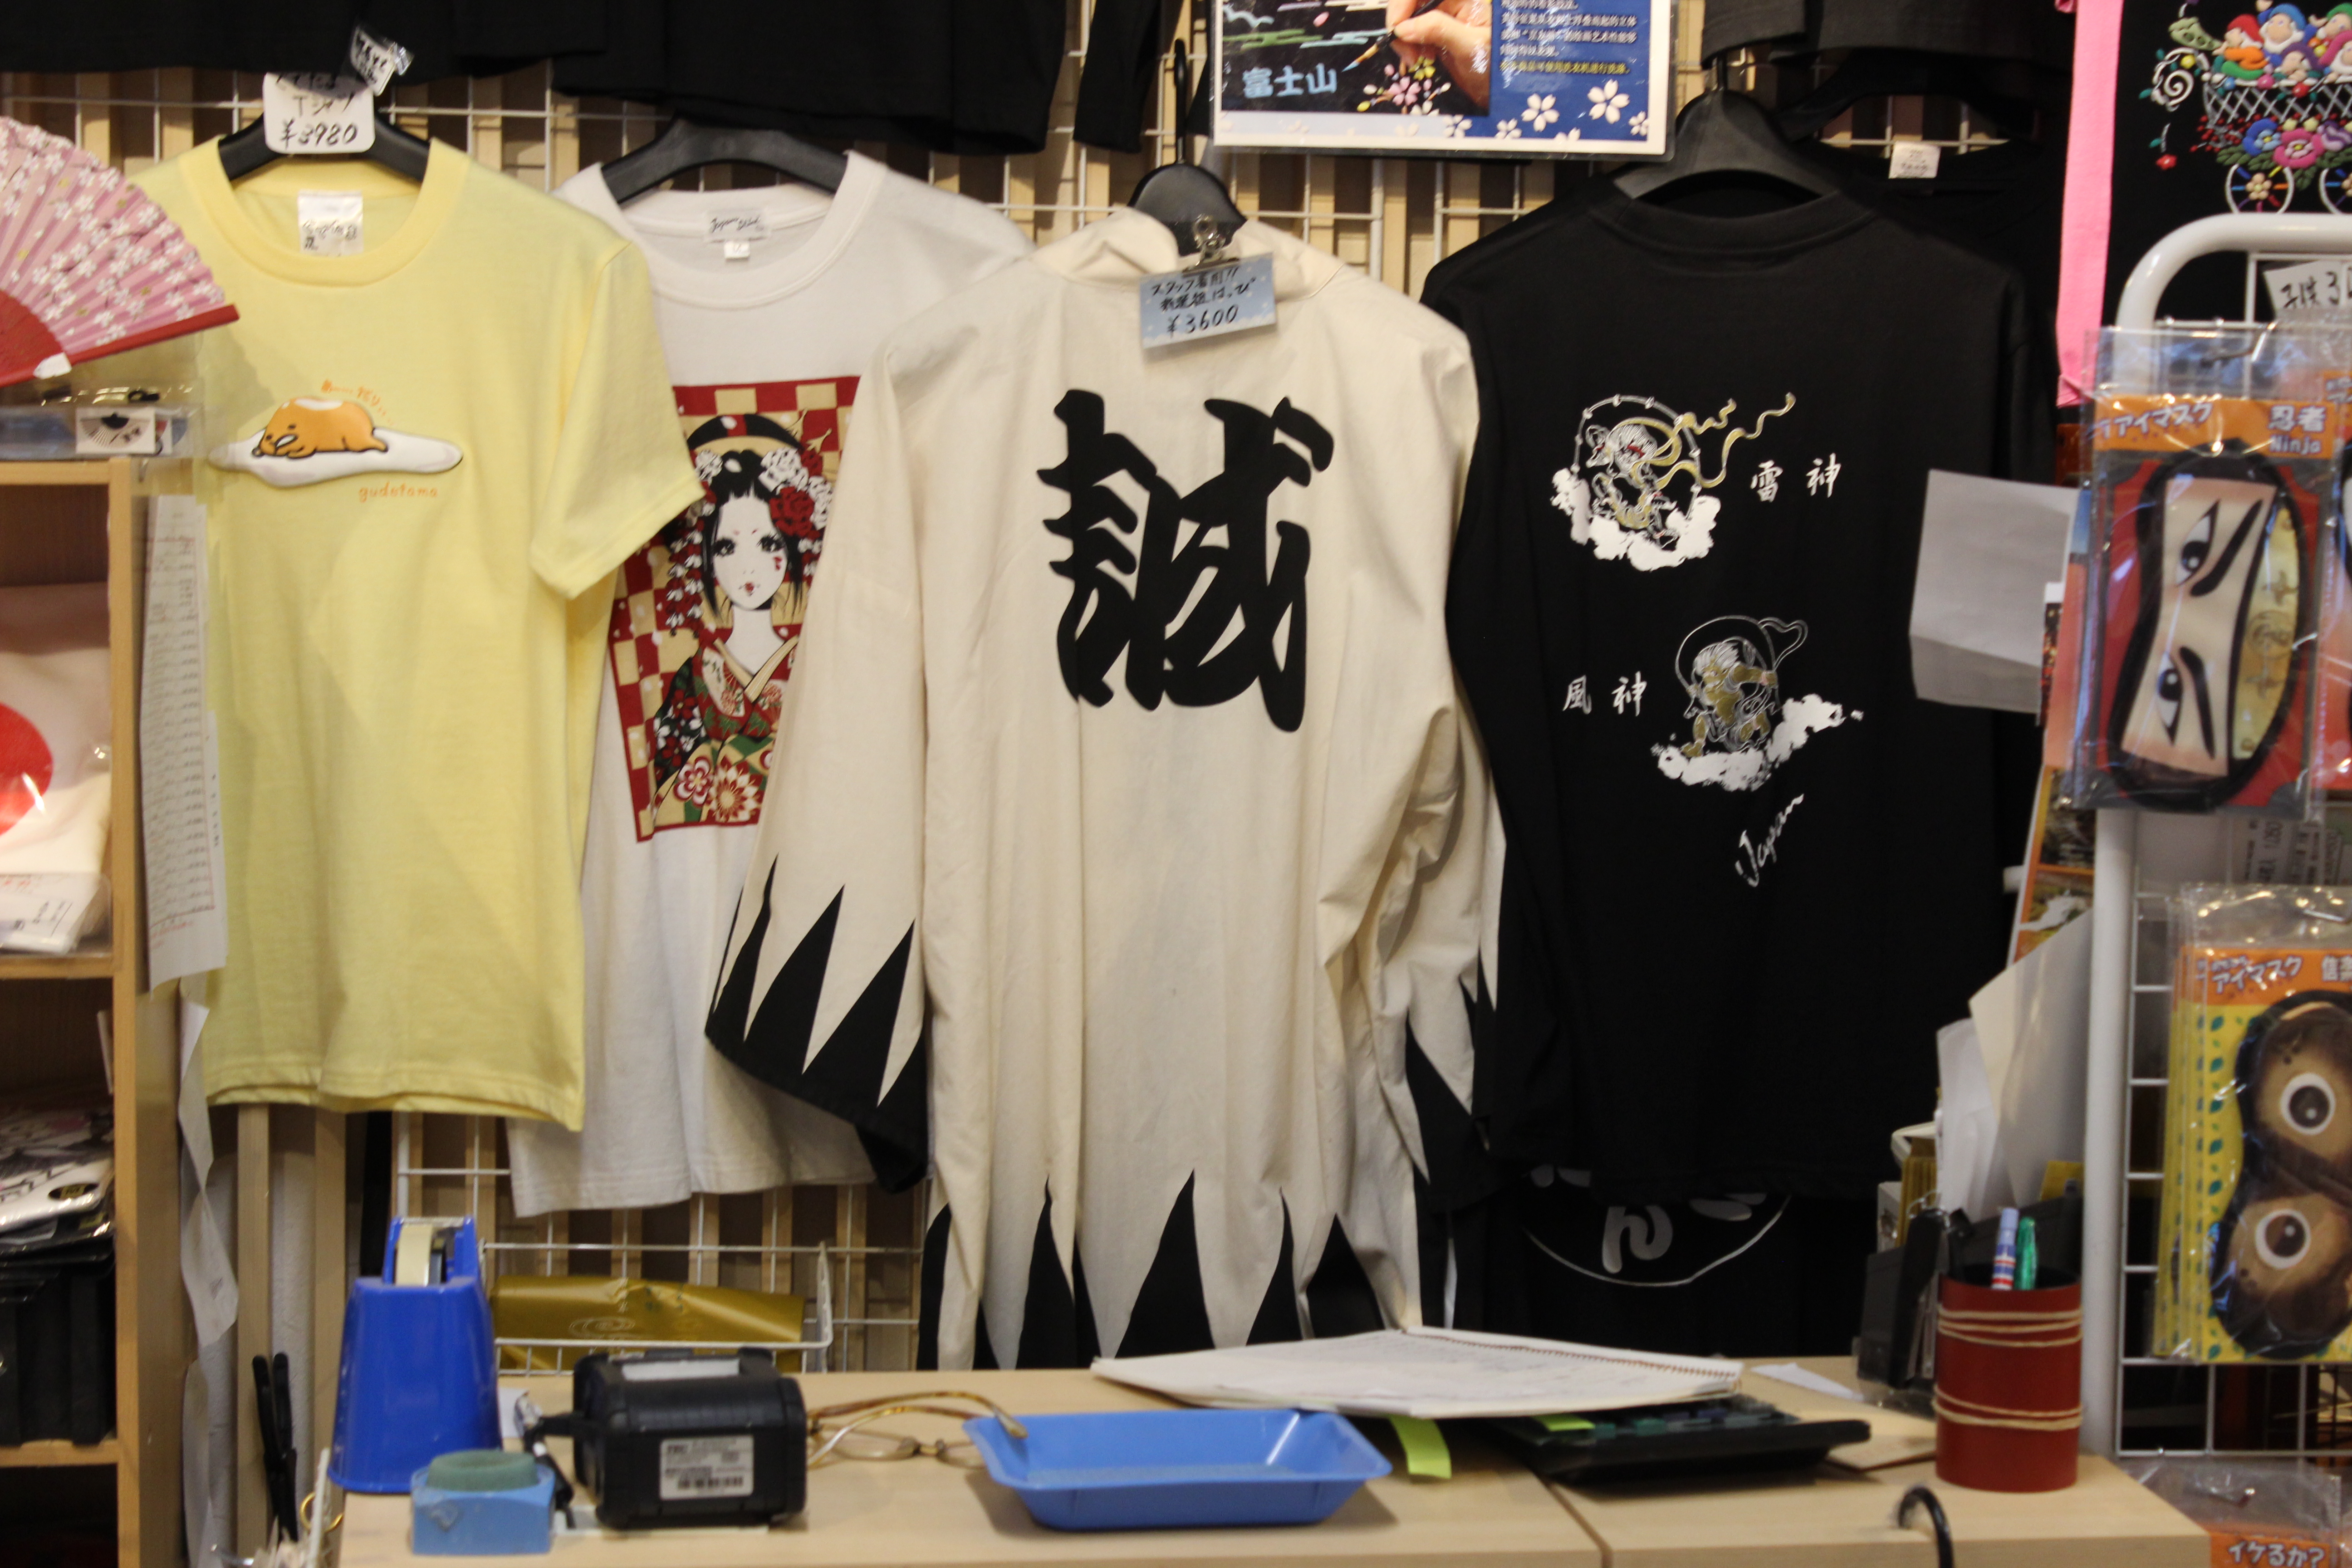 Tourist shops selling Kimonos and Yukatas